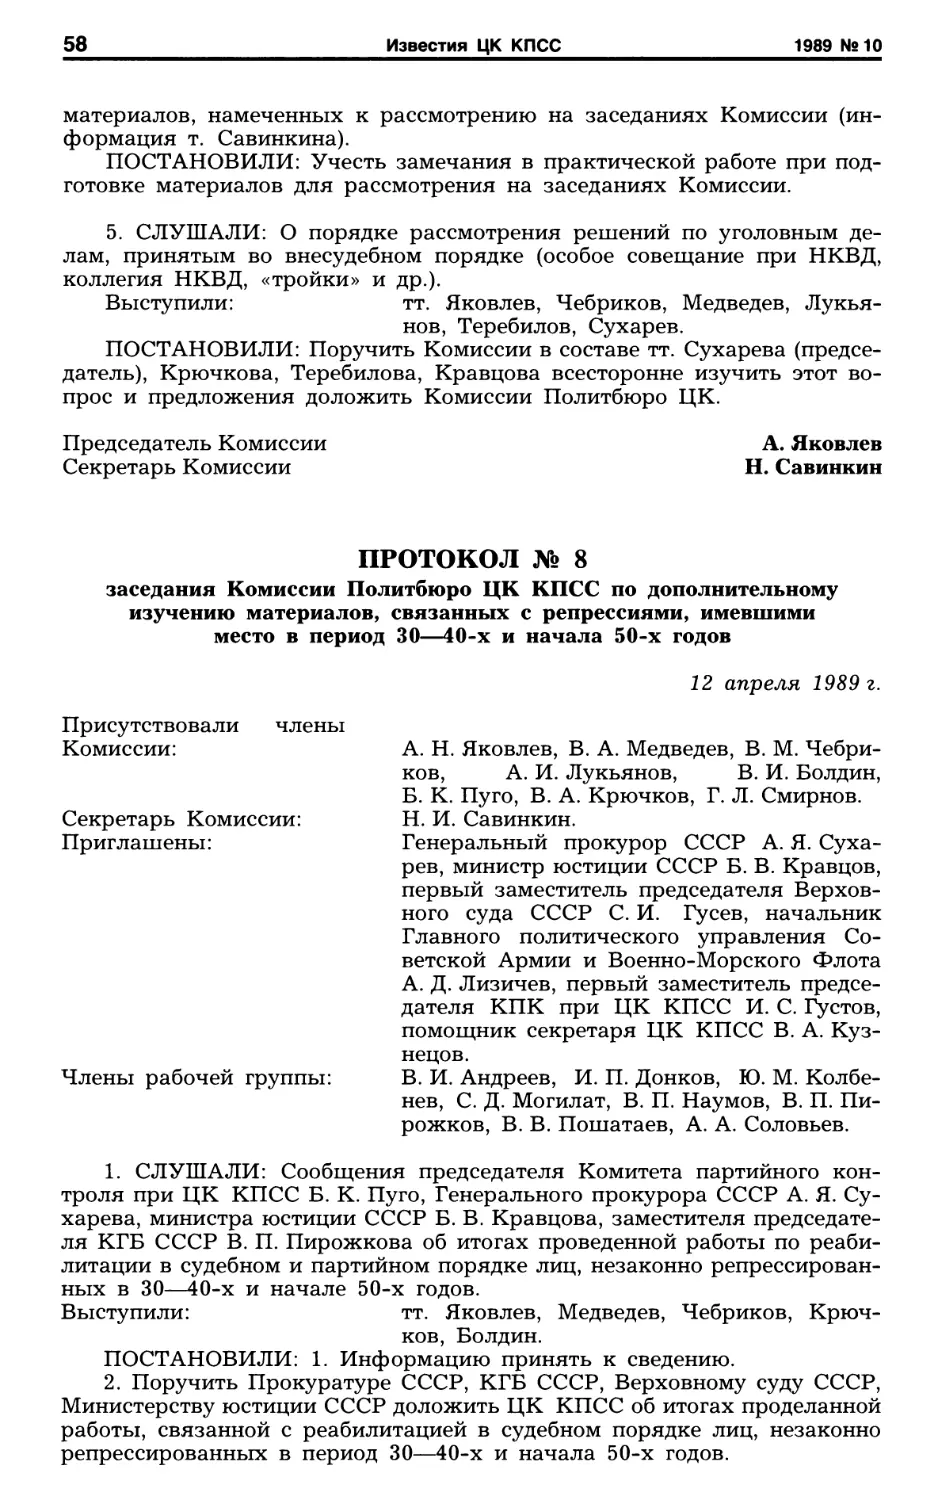 Протокол №8 заседания Комиссии Политбюро ЦК КПСС